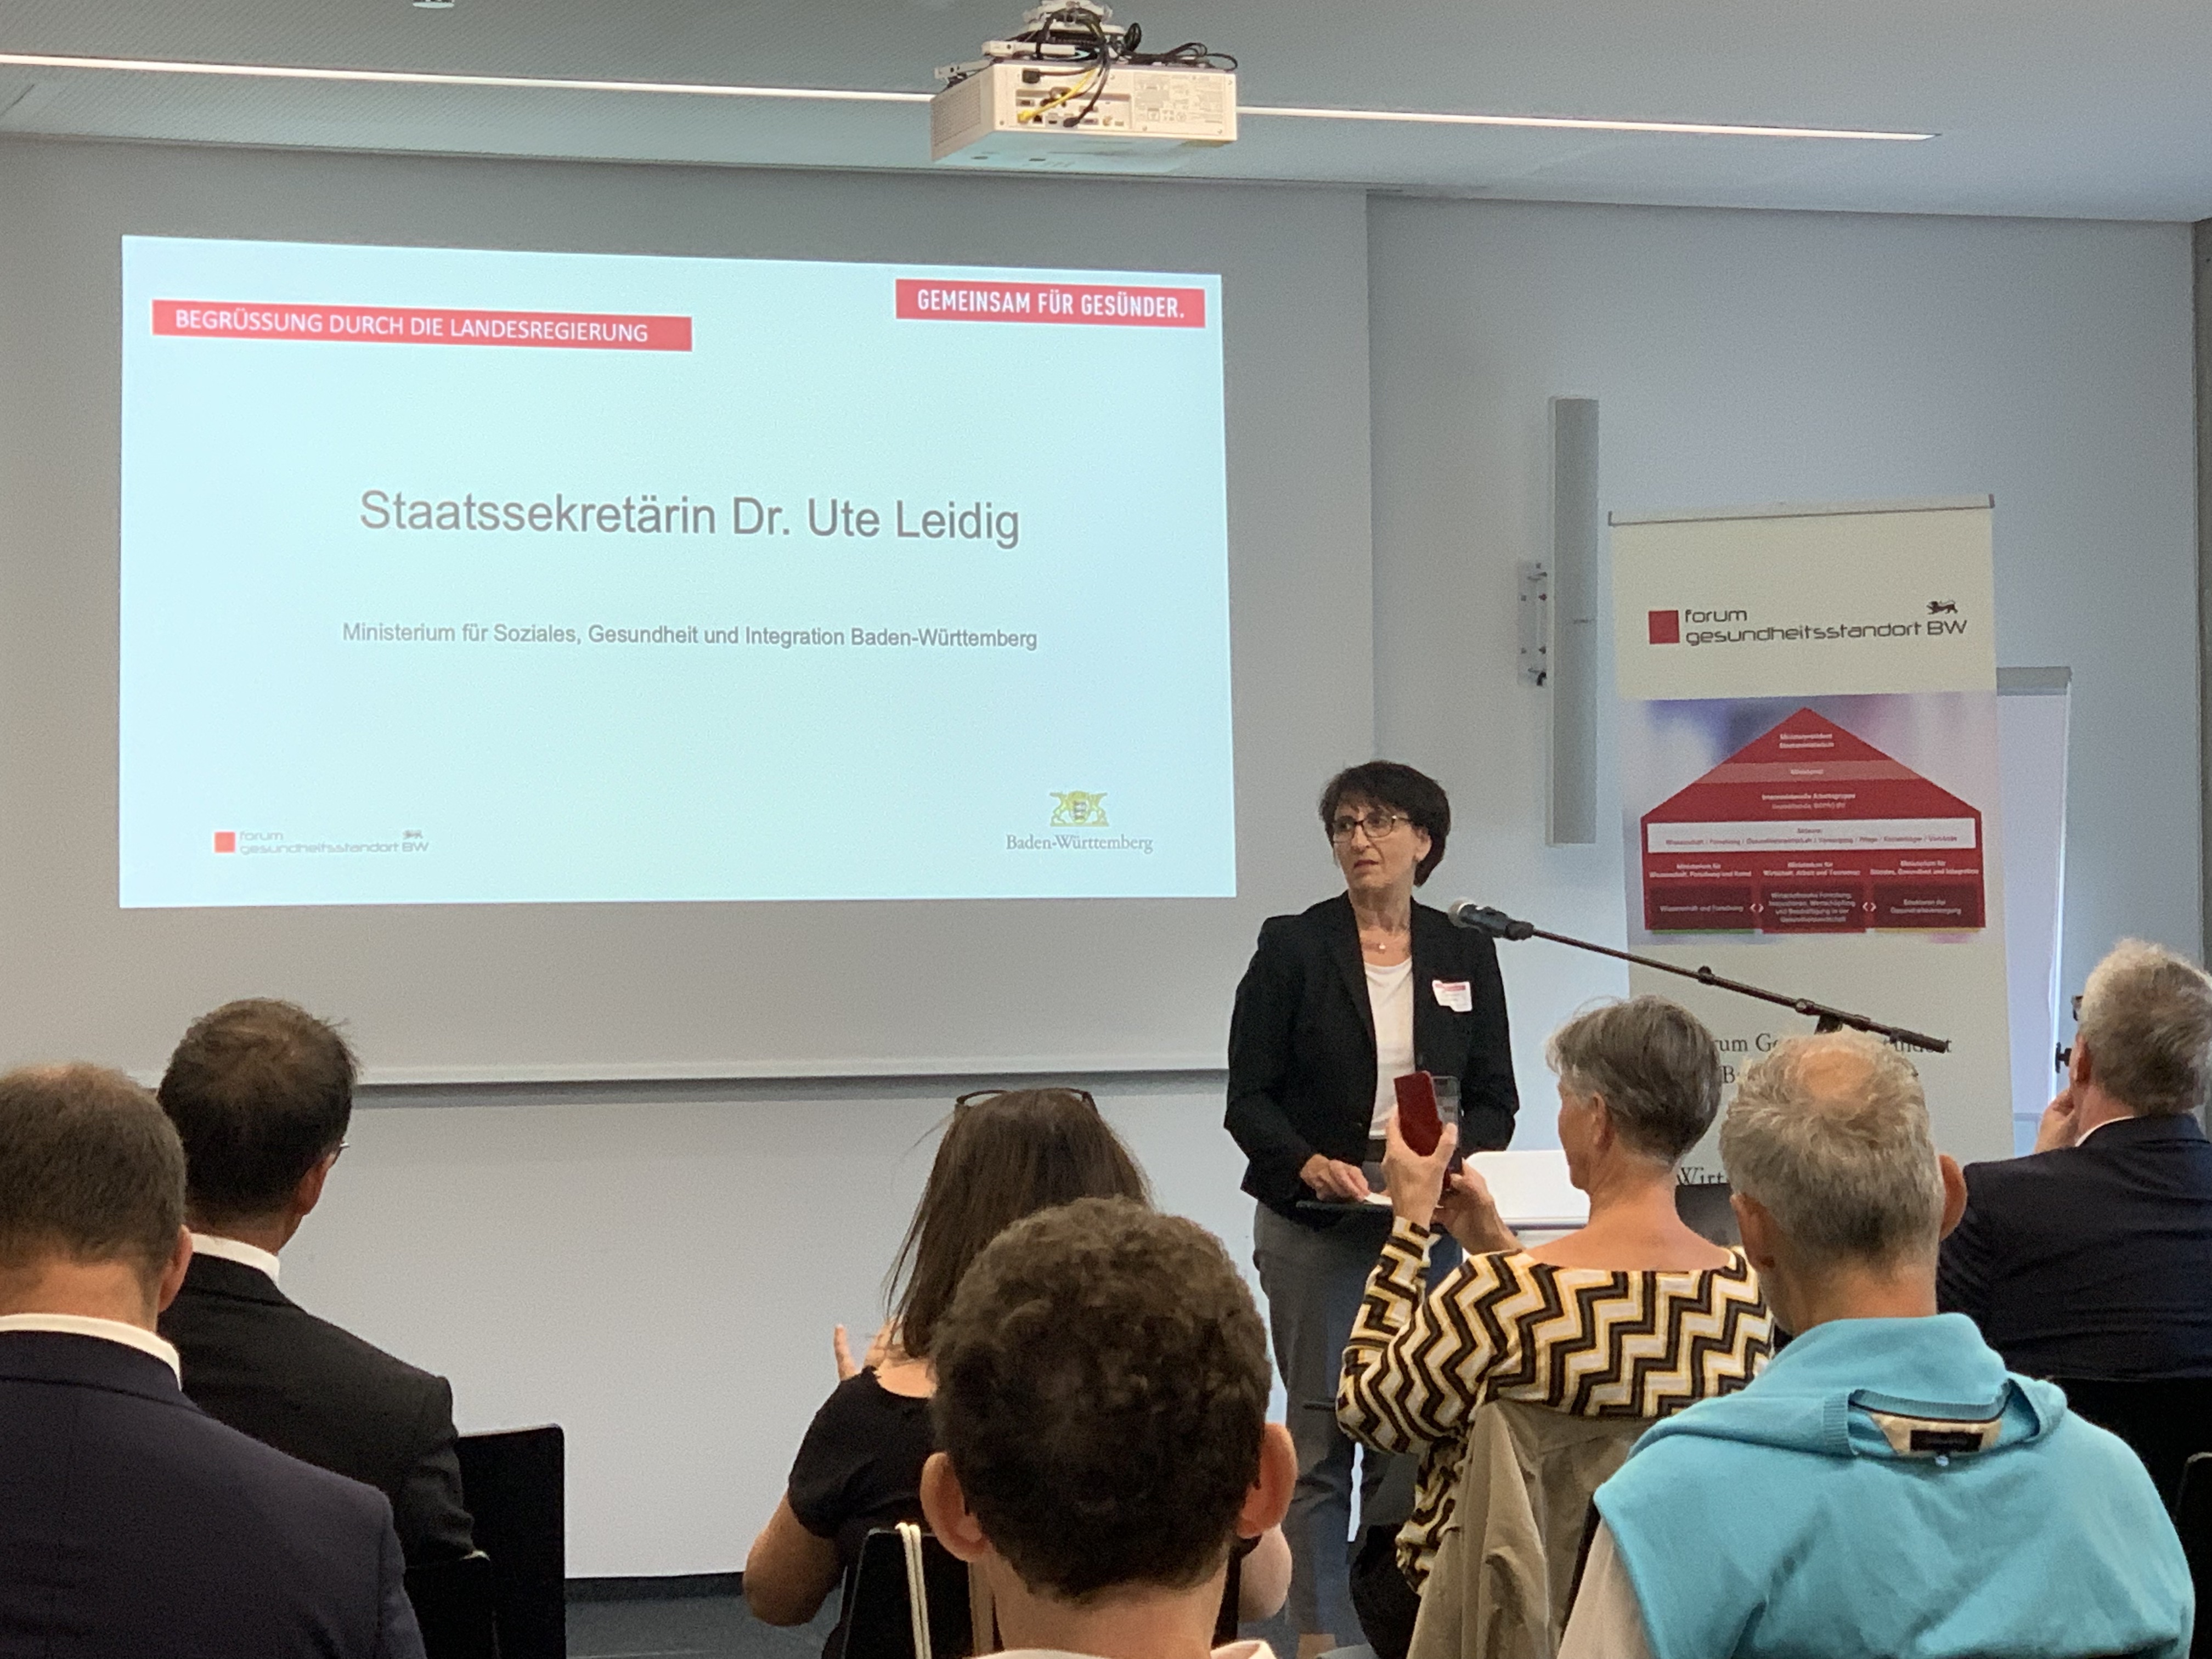 Dr. Ute Leidig Staatssekretärin, Ministerium für Soziales, Gesundheit und Integration Baden-Württemberg